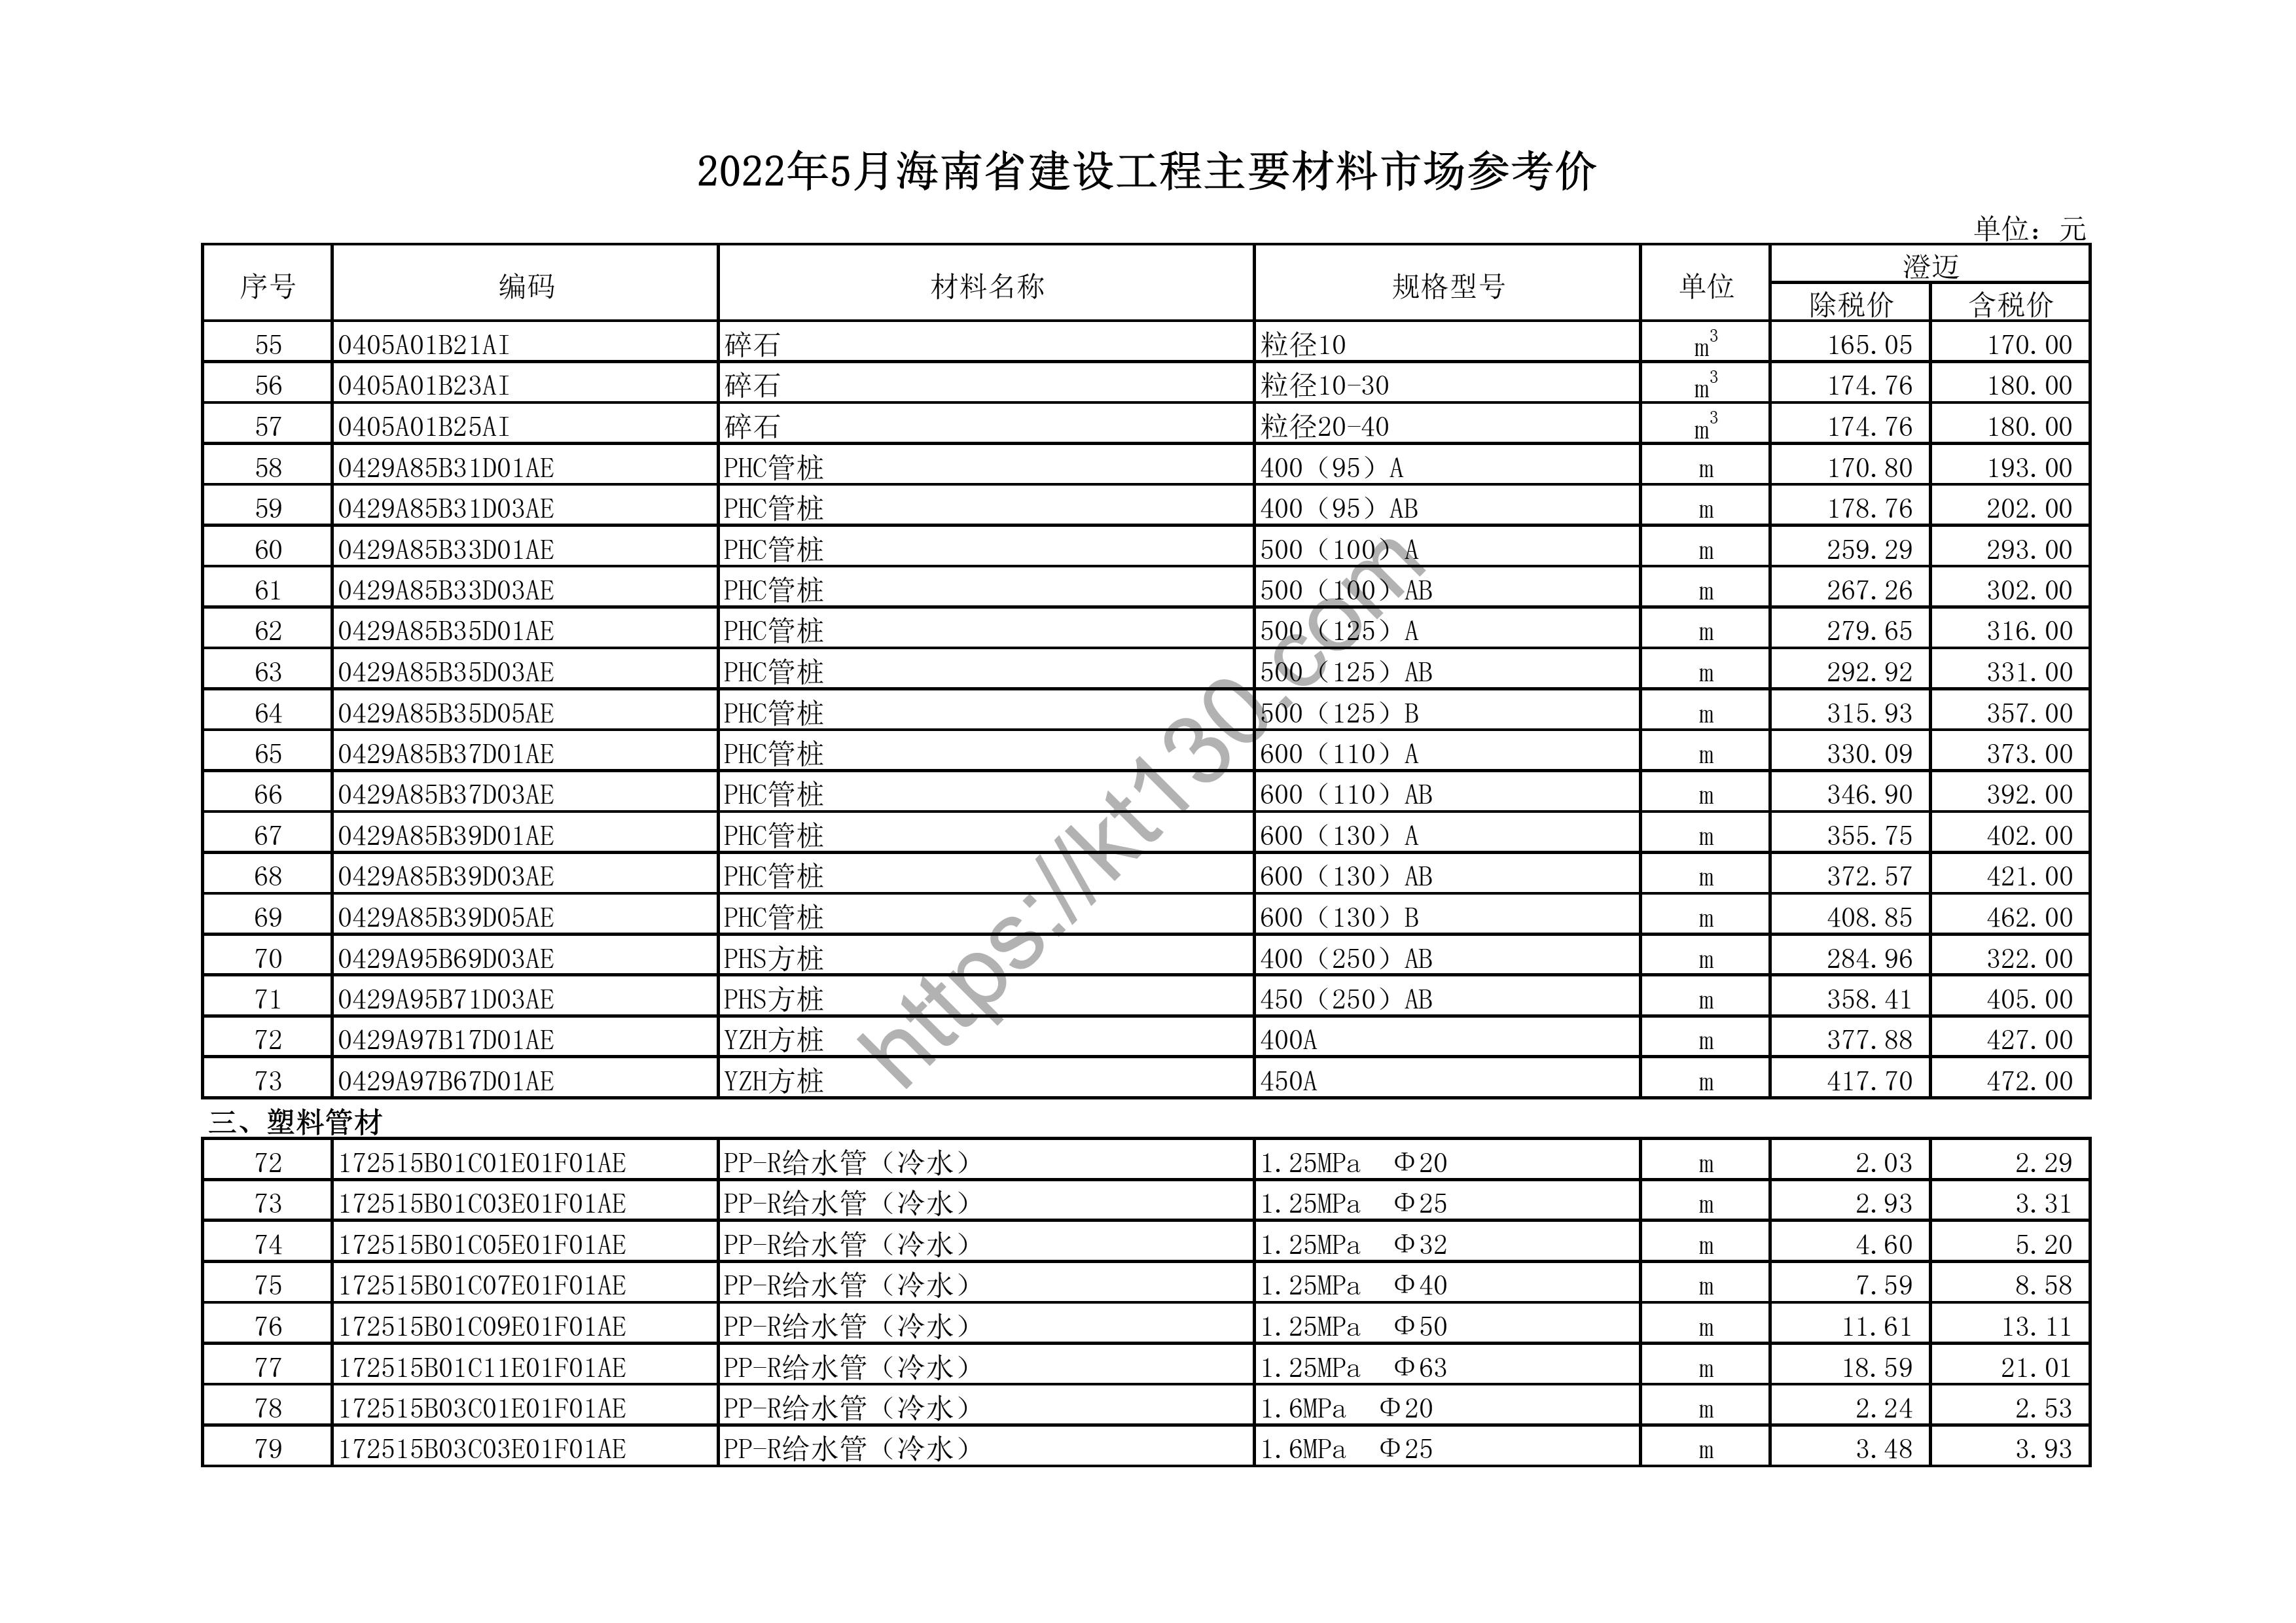 海南省2022年5月建筑材料价_湿法夹胶玻璃_44346